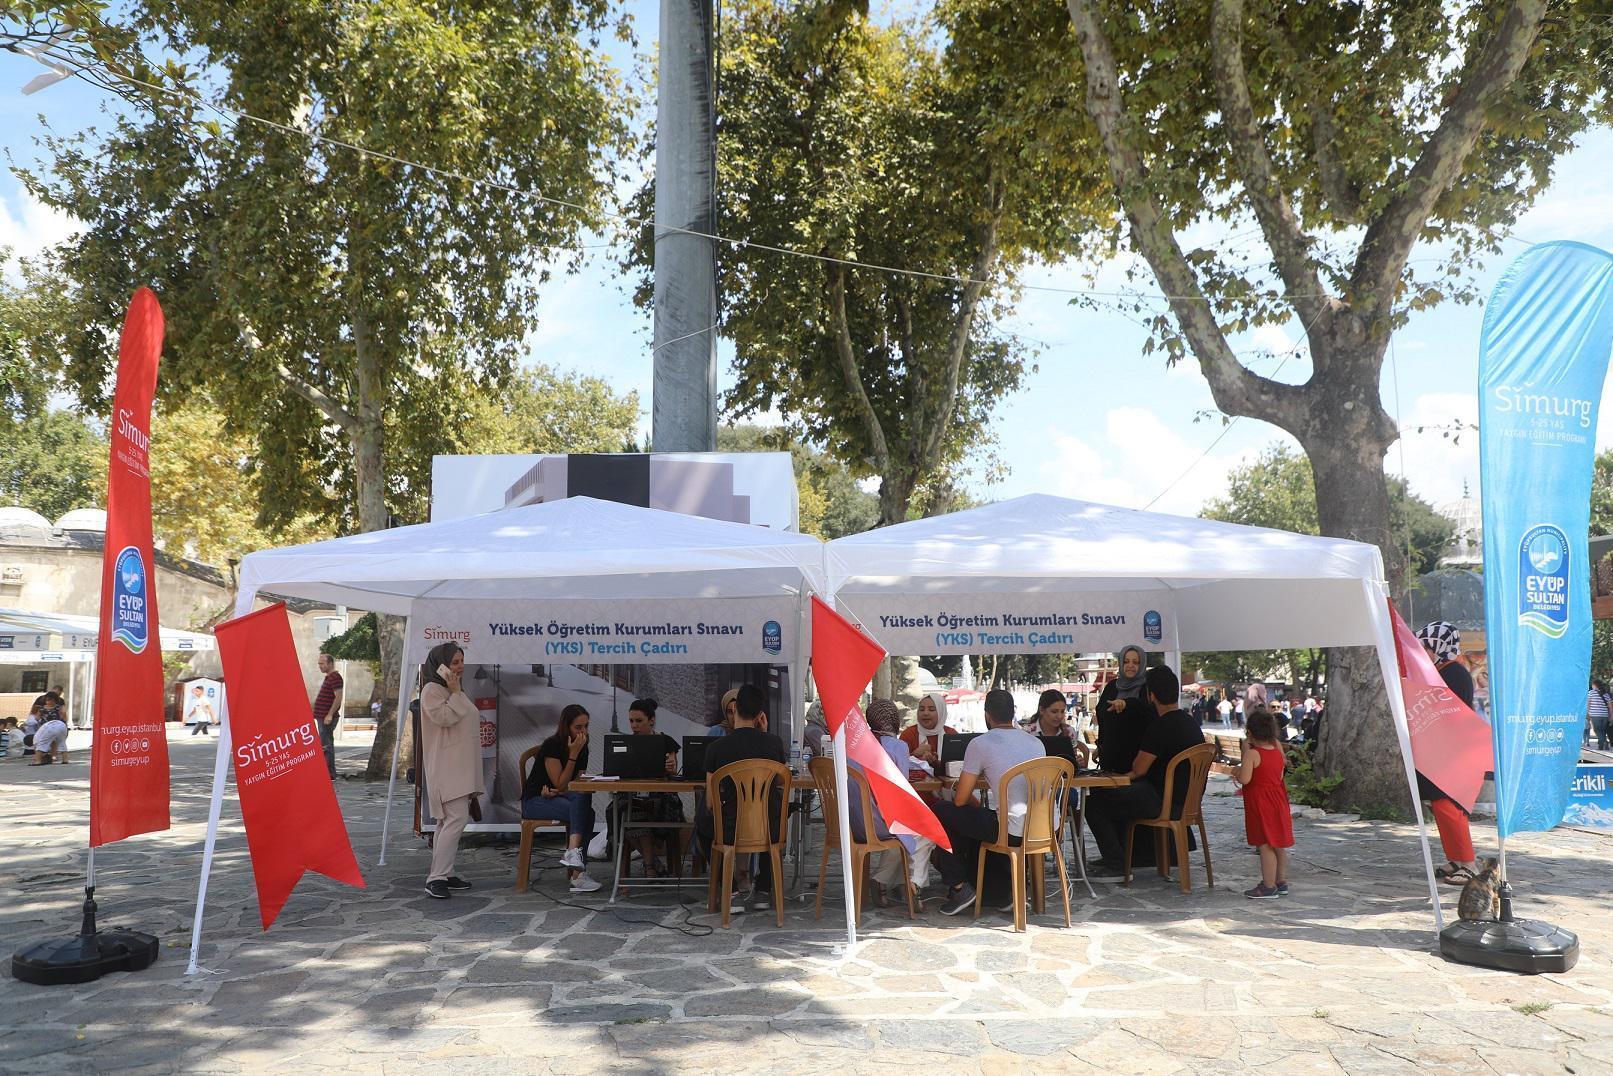 YKS tercih çadırı Eyüp Sultan Camii Meydanında